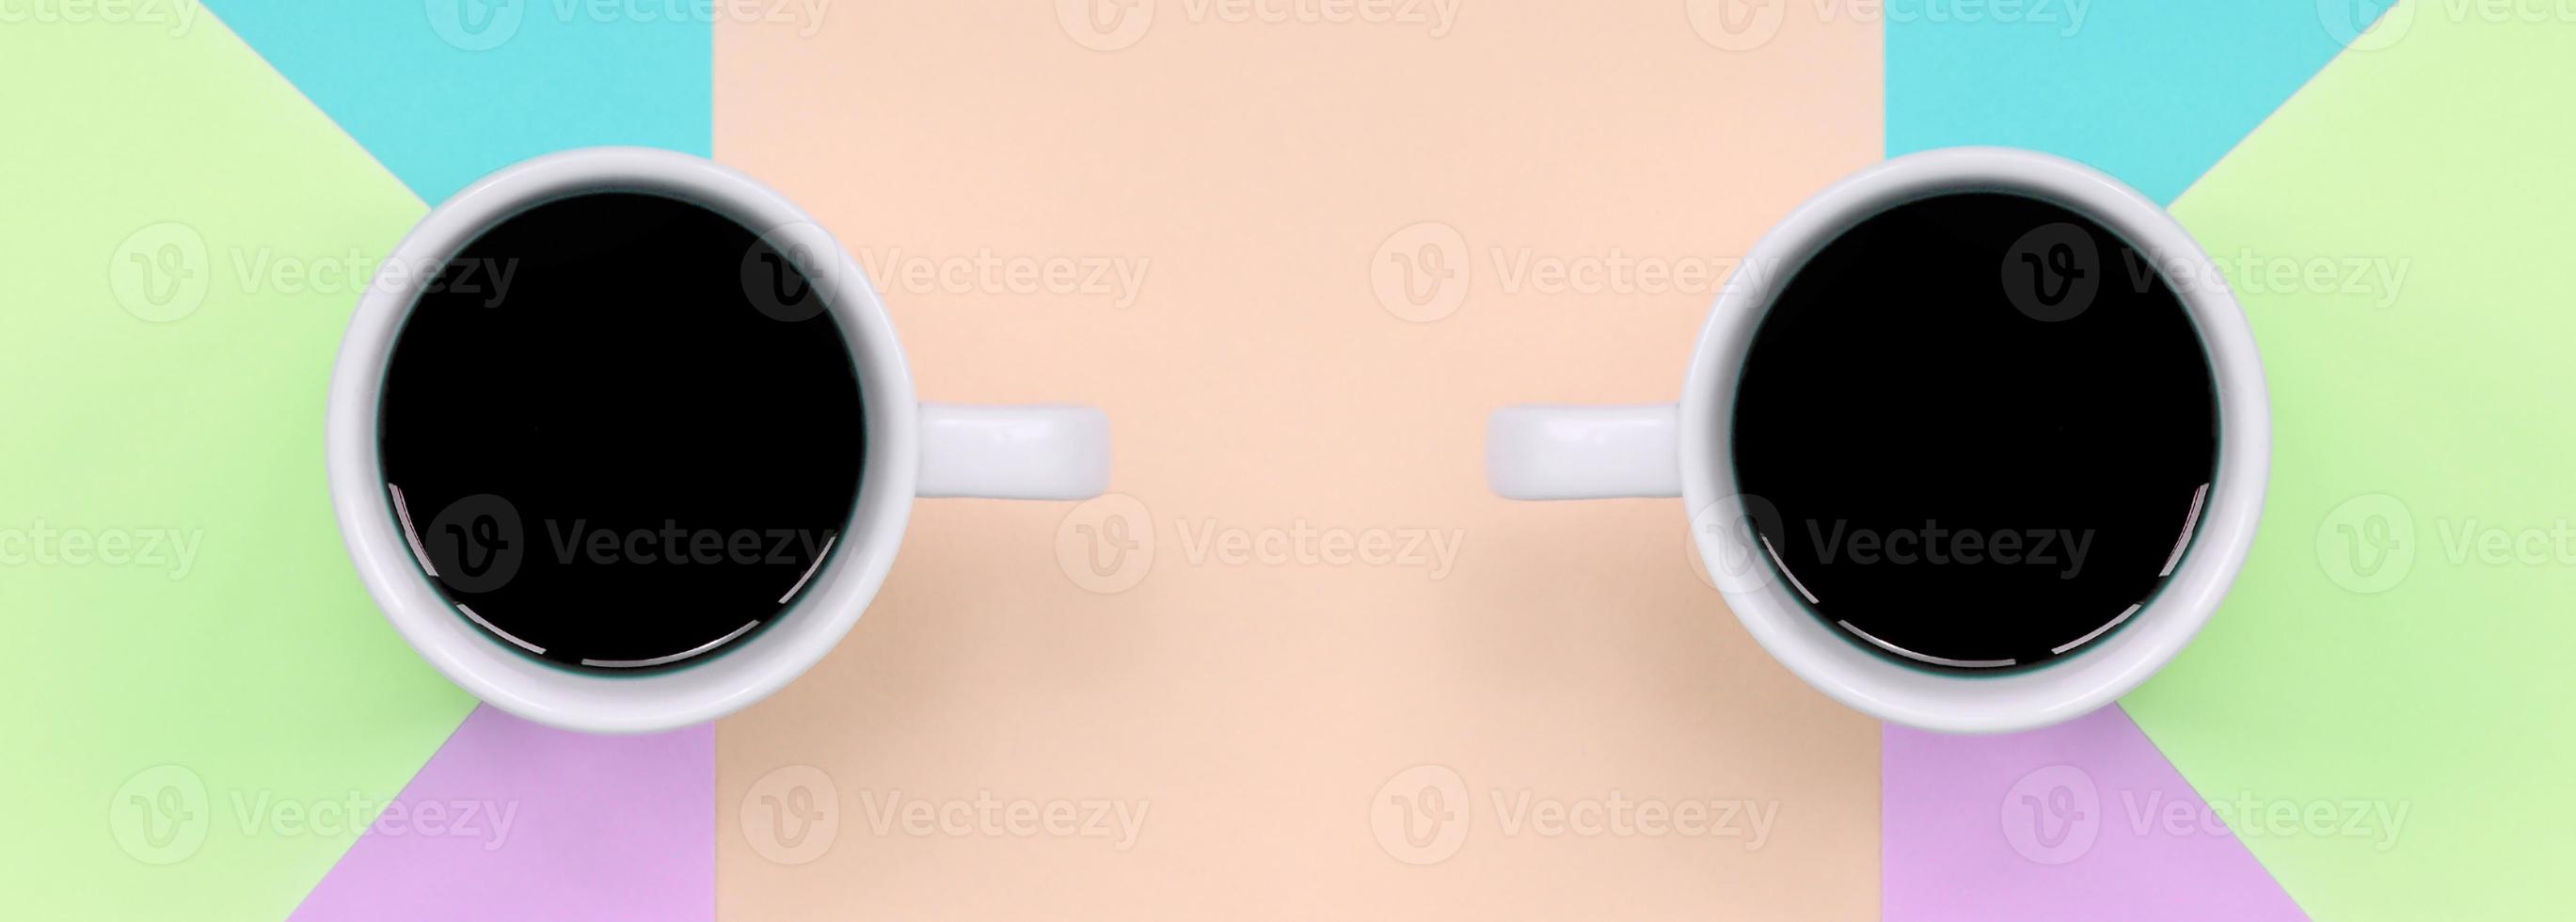 deux petites tasses à café blanches sur fond de texture de papier de mode pastel rose, bleu, corail et citron vert photo